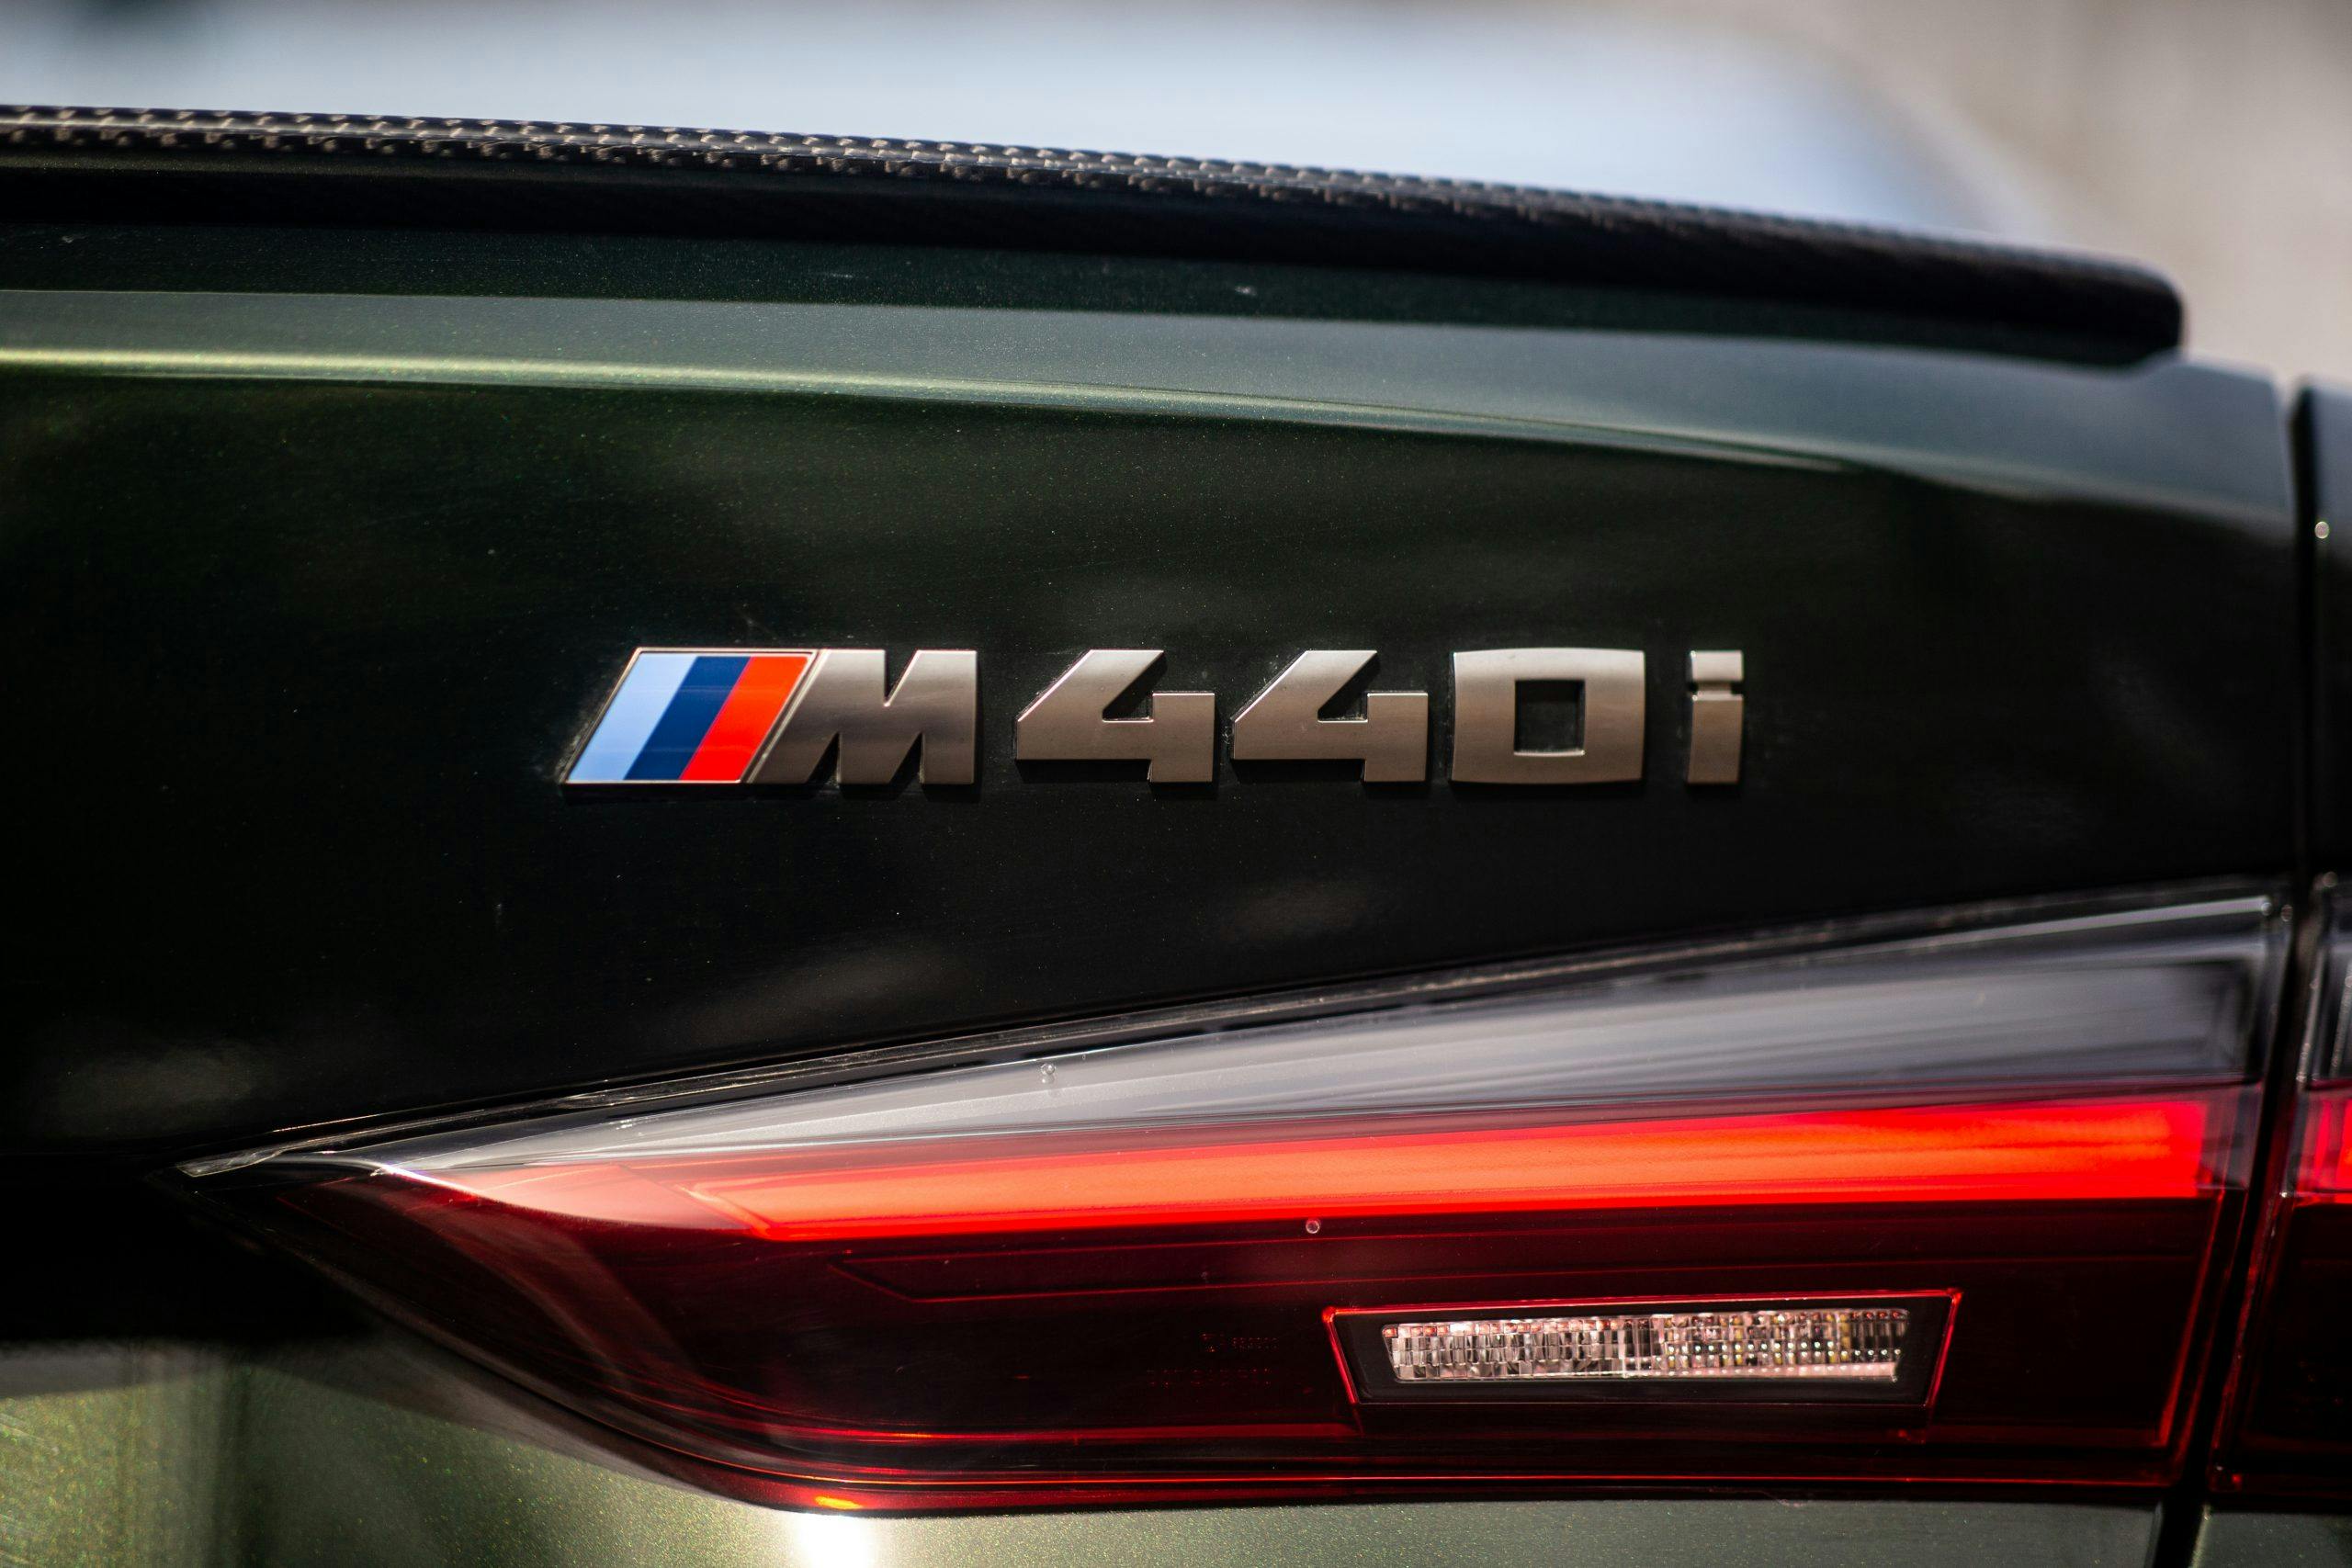 2022 BMW M440i rear decklid badging